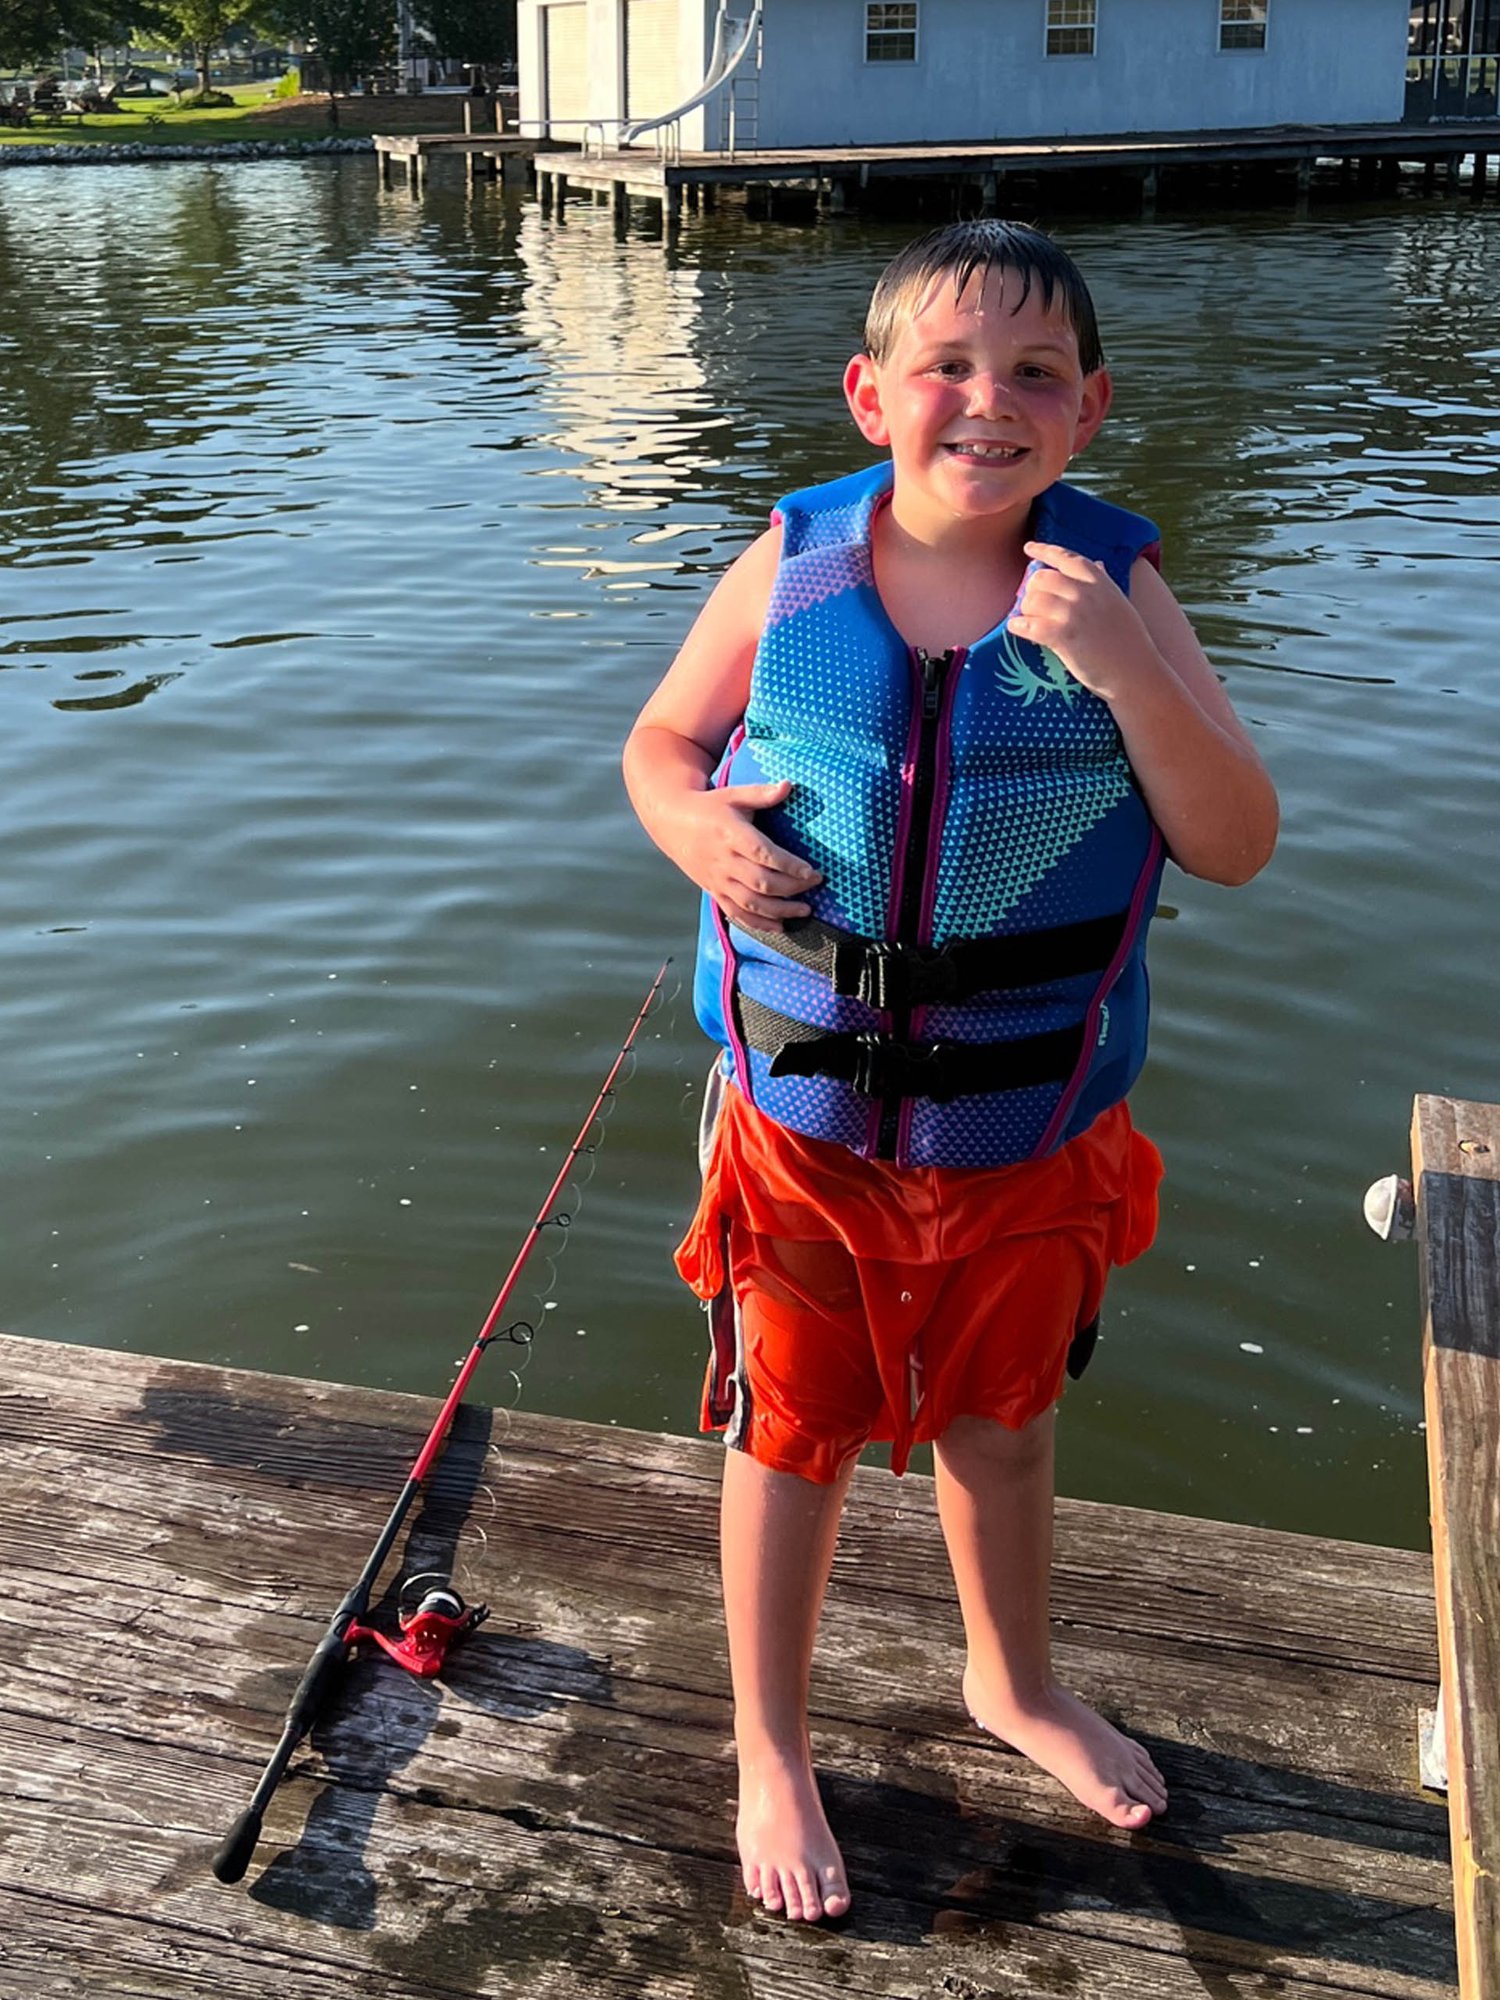 Xander enjoying a day at the lake